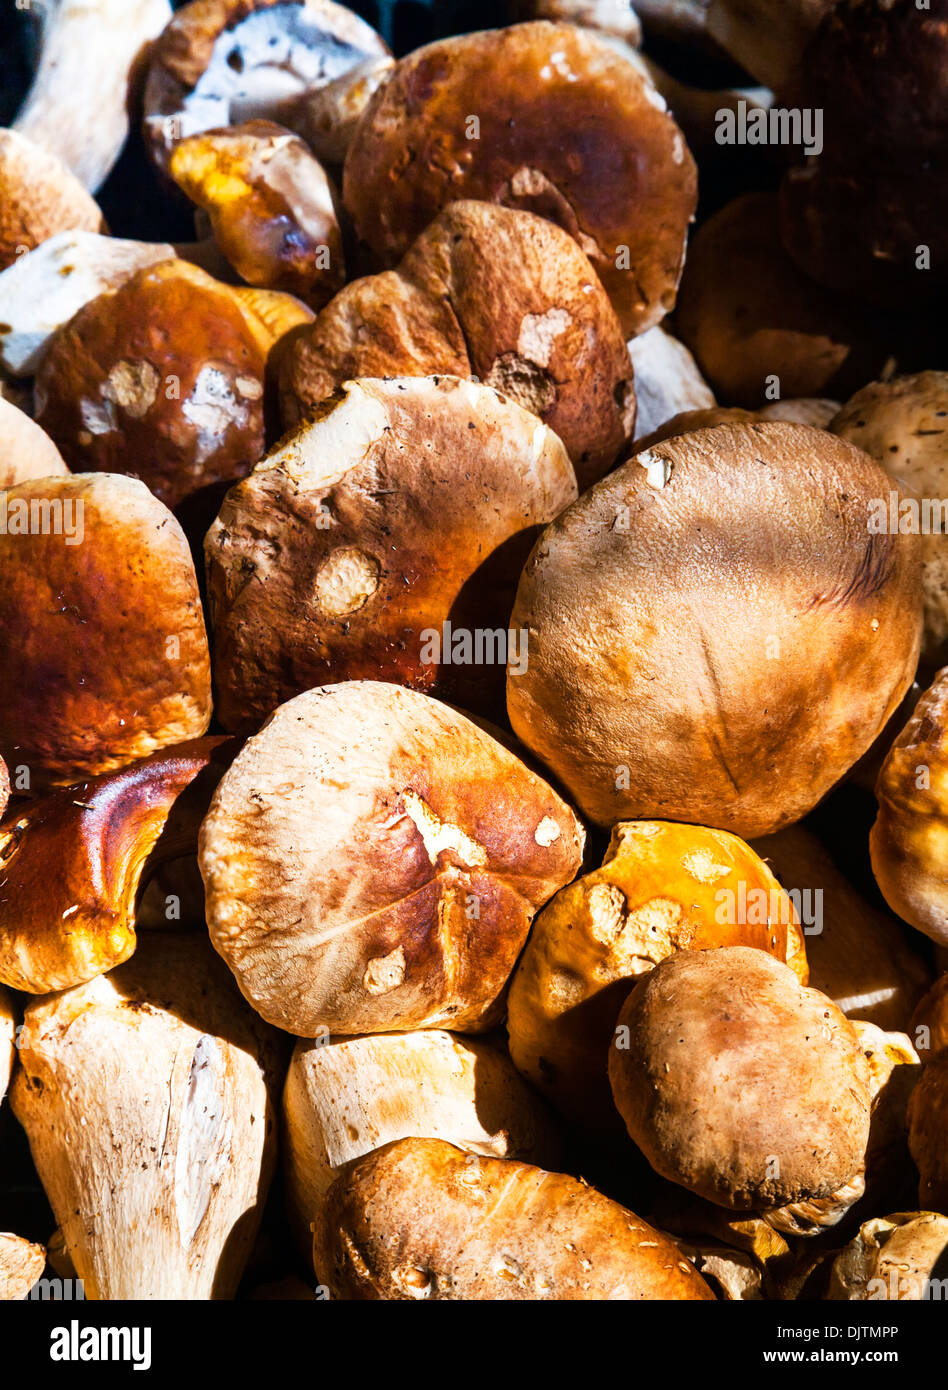 Boletus edulis (Porcini or Cep) mushrooms for sale in Mercato di Rialto market, Venice, Italy. Stock Photo